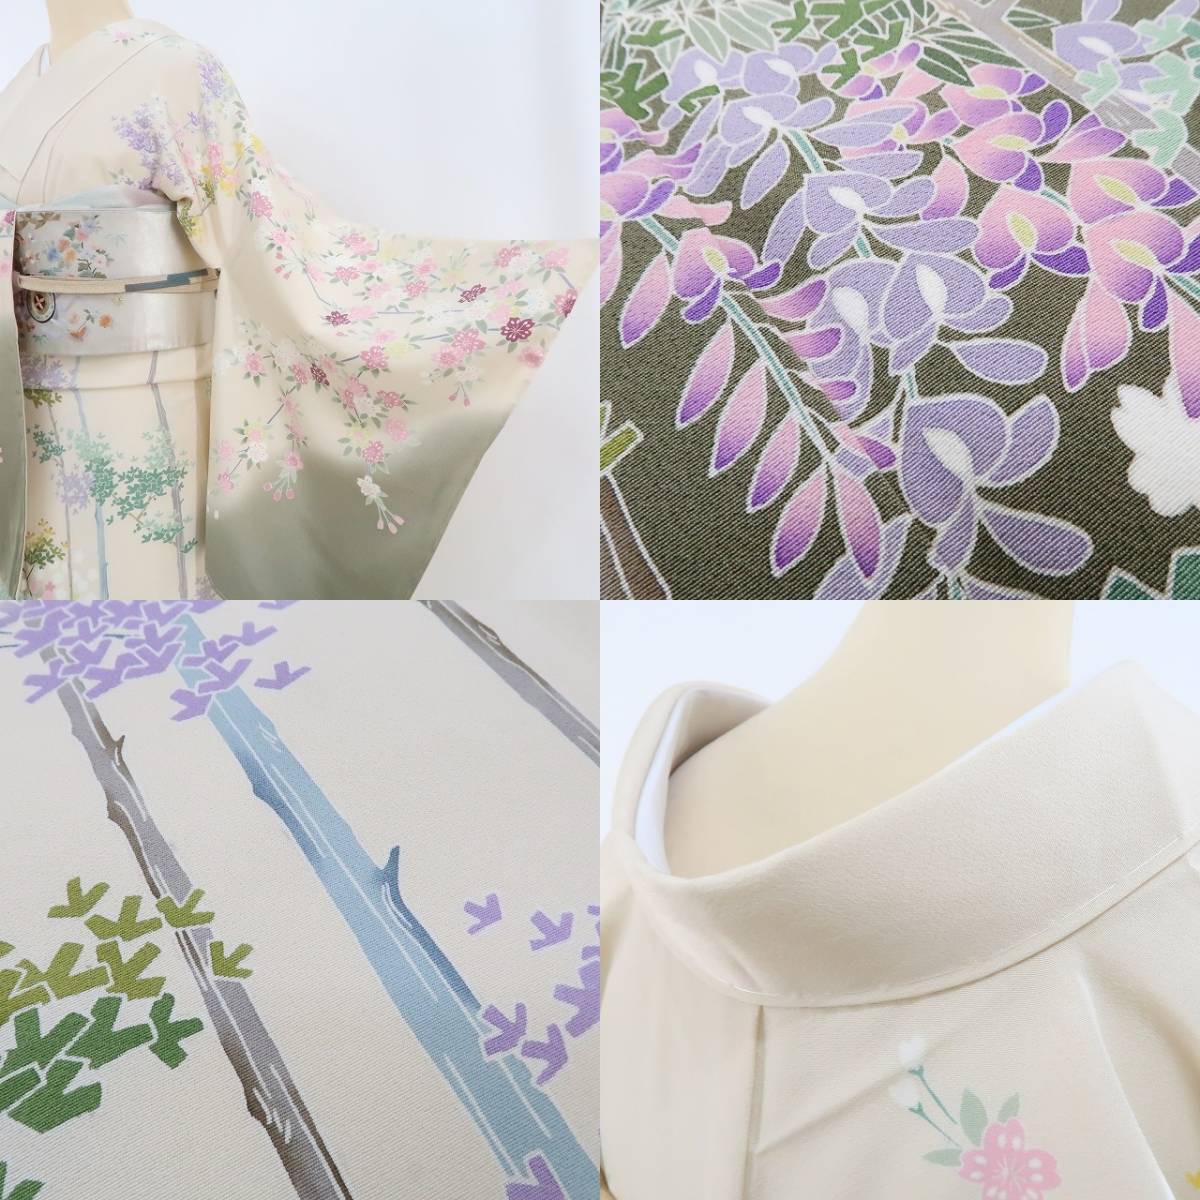 yu.saku2 новый товар. .. магазин качественный продукт рука .... автор предмет .. кимоно . установка нить есть *.. как цветок открывать Sakura . глициния бамбук . весна день .. как хороший сезон ~ выходной костюм 2868